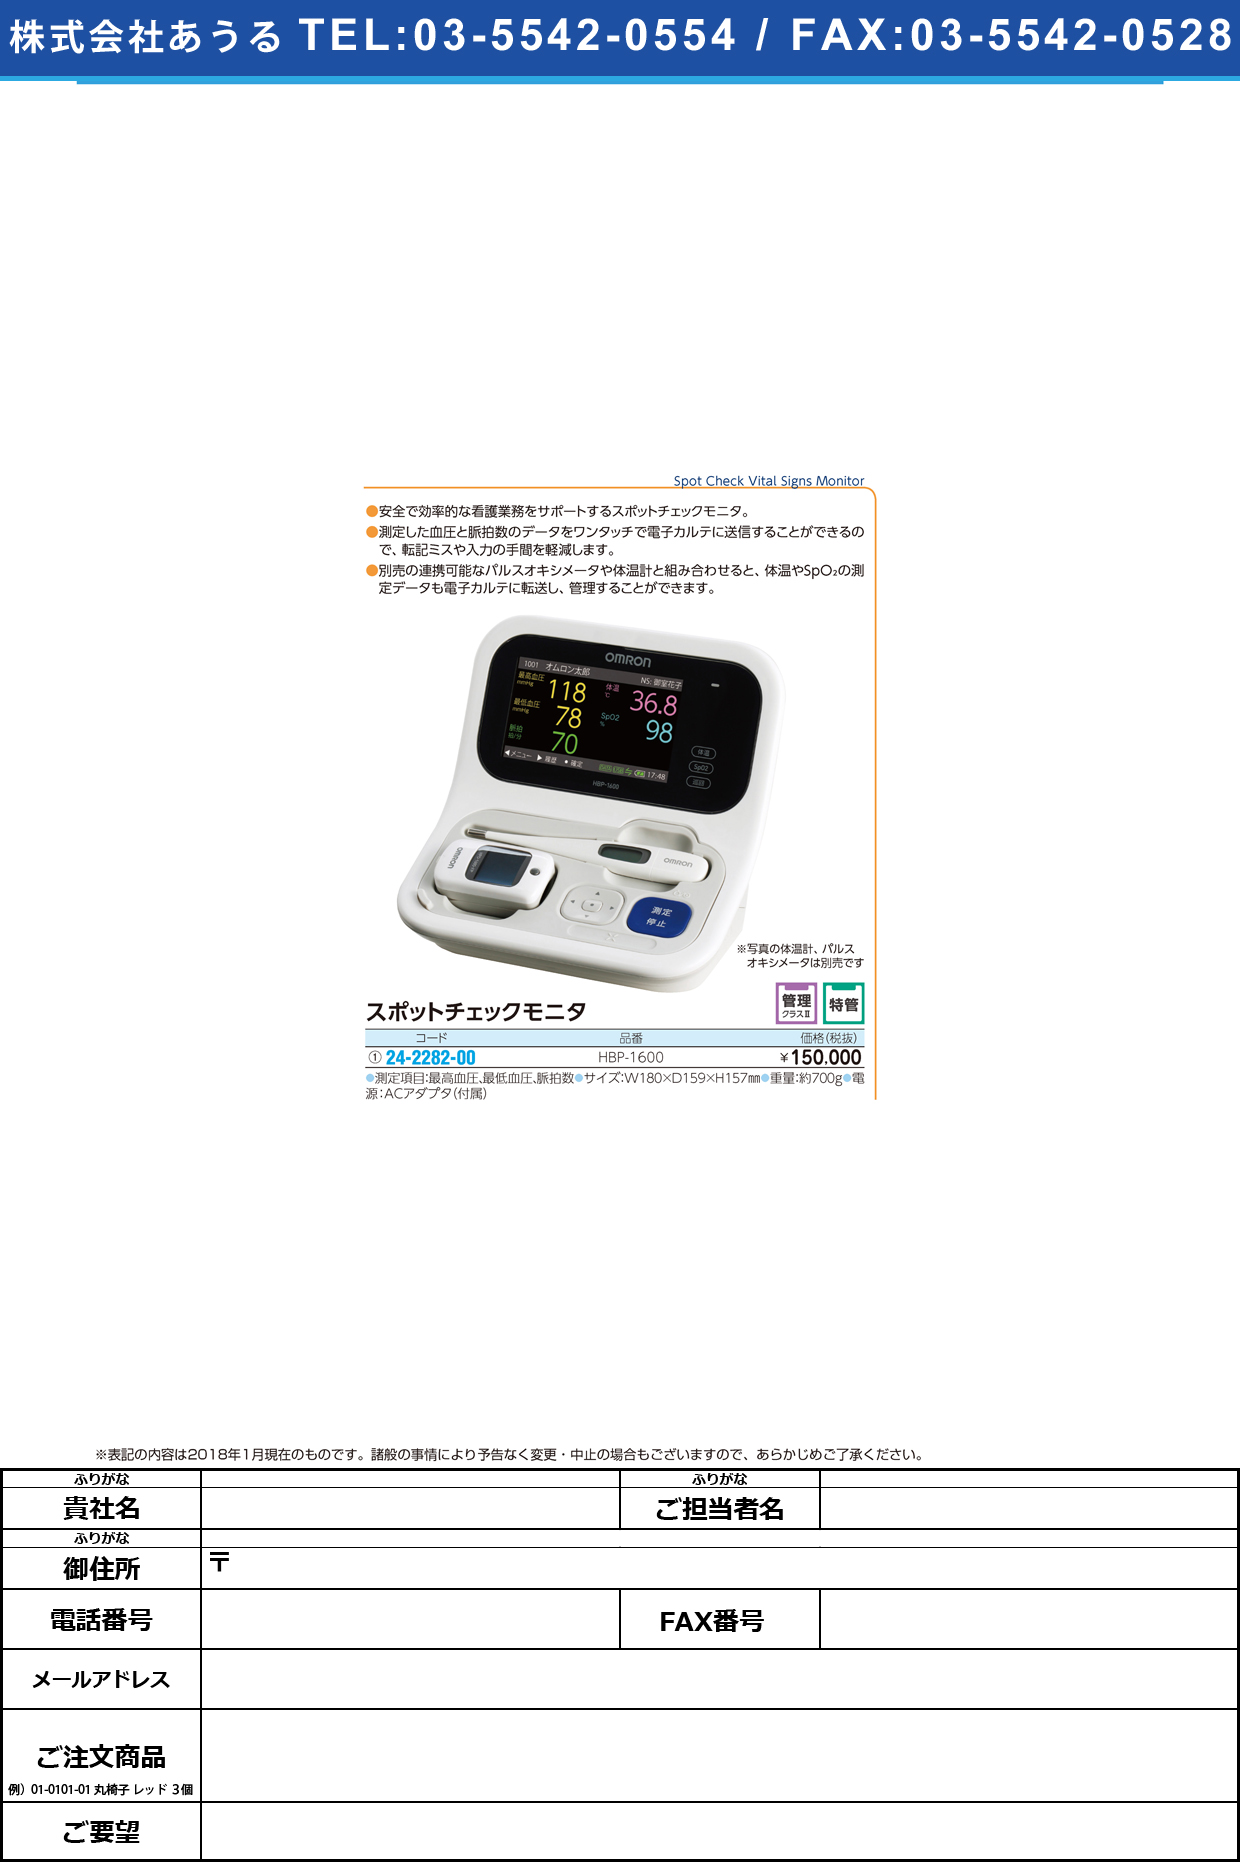 (24-2282-00)スポットチェックモニタ HBP-1600 ｽﾎﾟｯﾄﾁｪｯｸﾓﾆﾀ(フクダコーリン)【1台単位】【2019年カタログ商品】